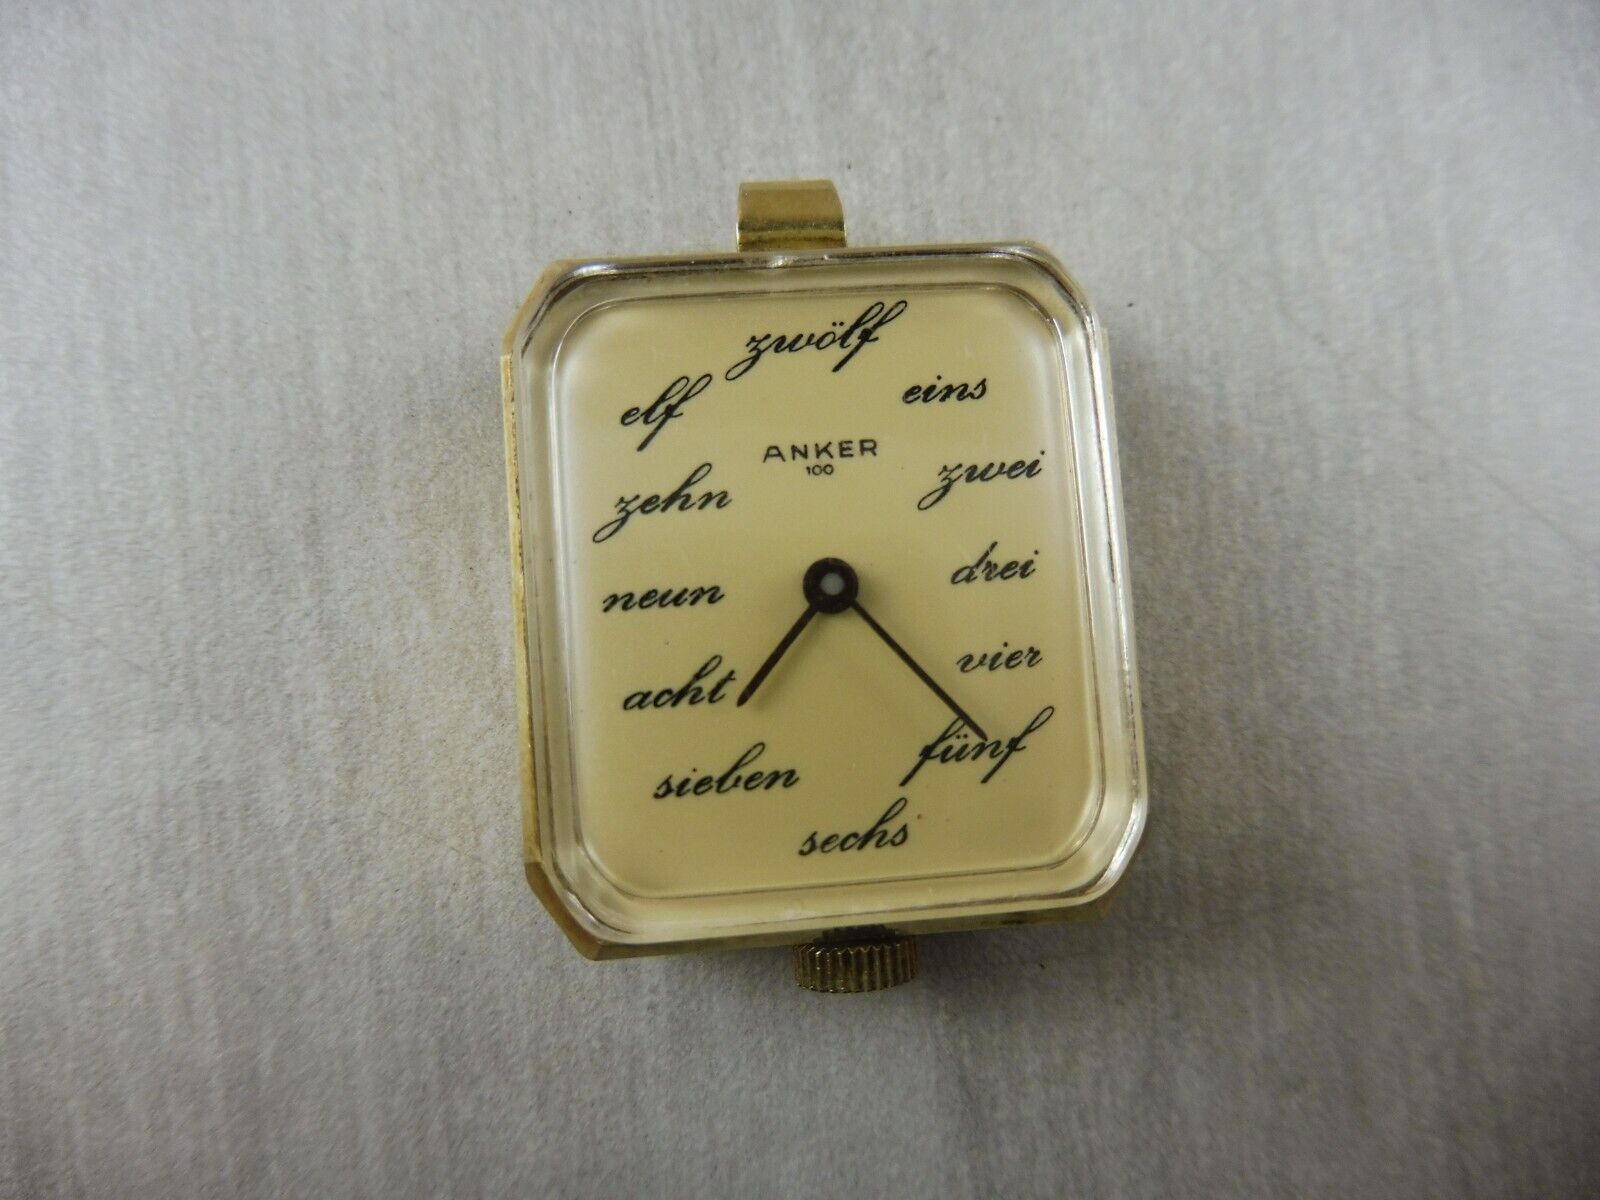  Ancienne montre pour femme, pendentif Anker 100, vintage